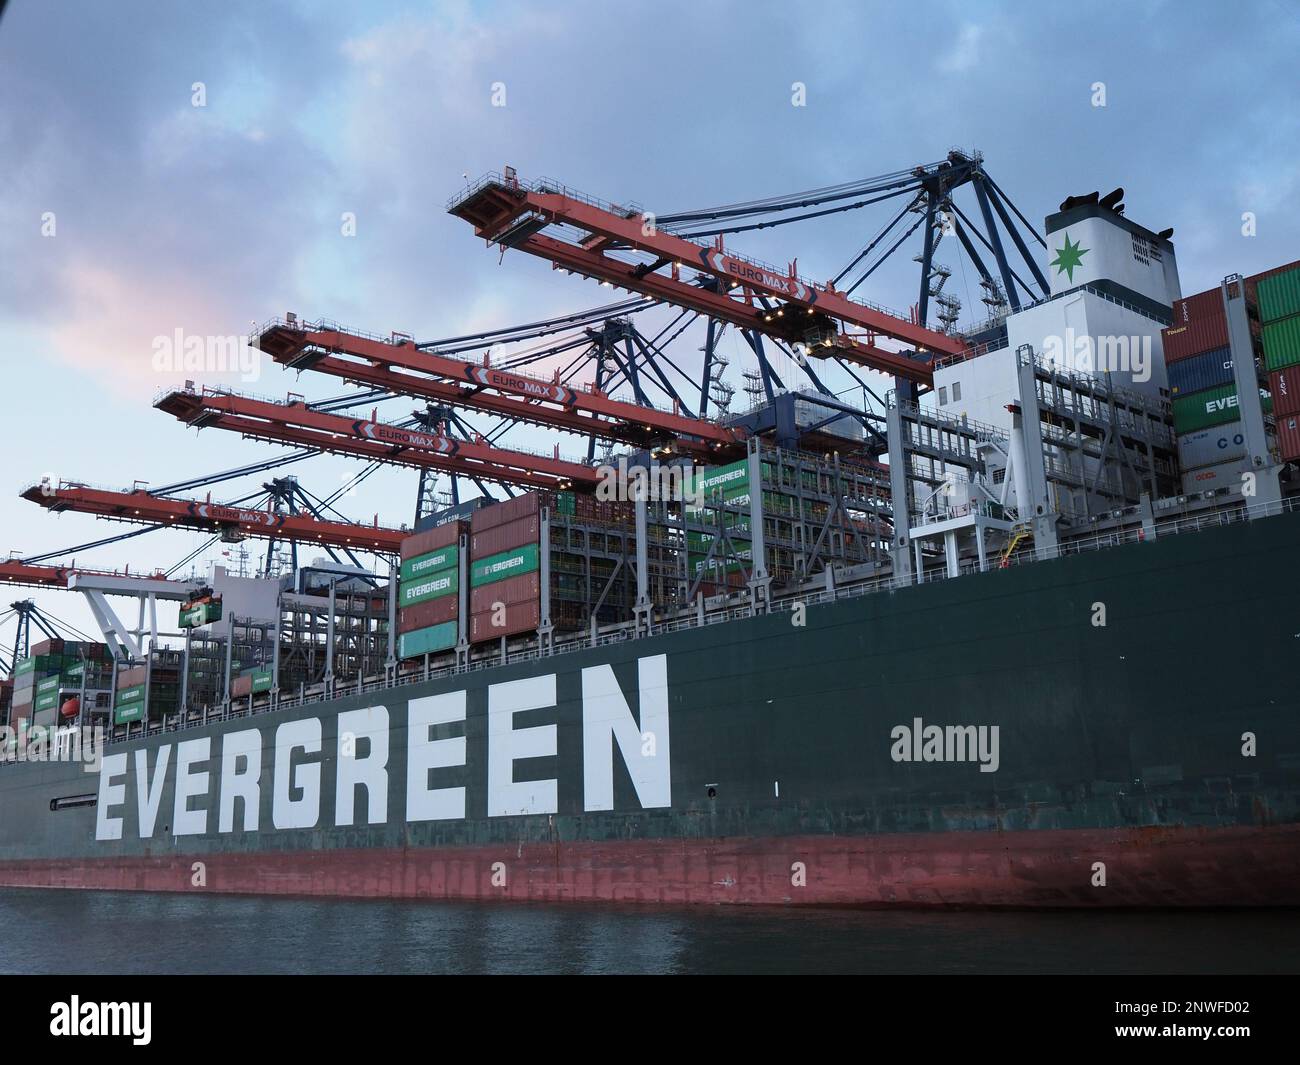 L'expédition Evergreen « toujours offerte » peut transporter environ 20,000 conteneurs. Port de Rotterdam, pays-Bas. Banque D'Images